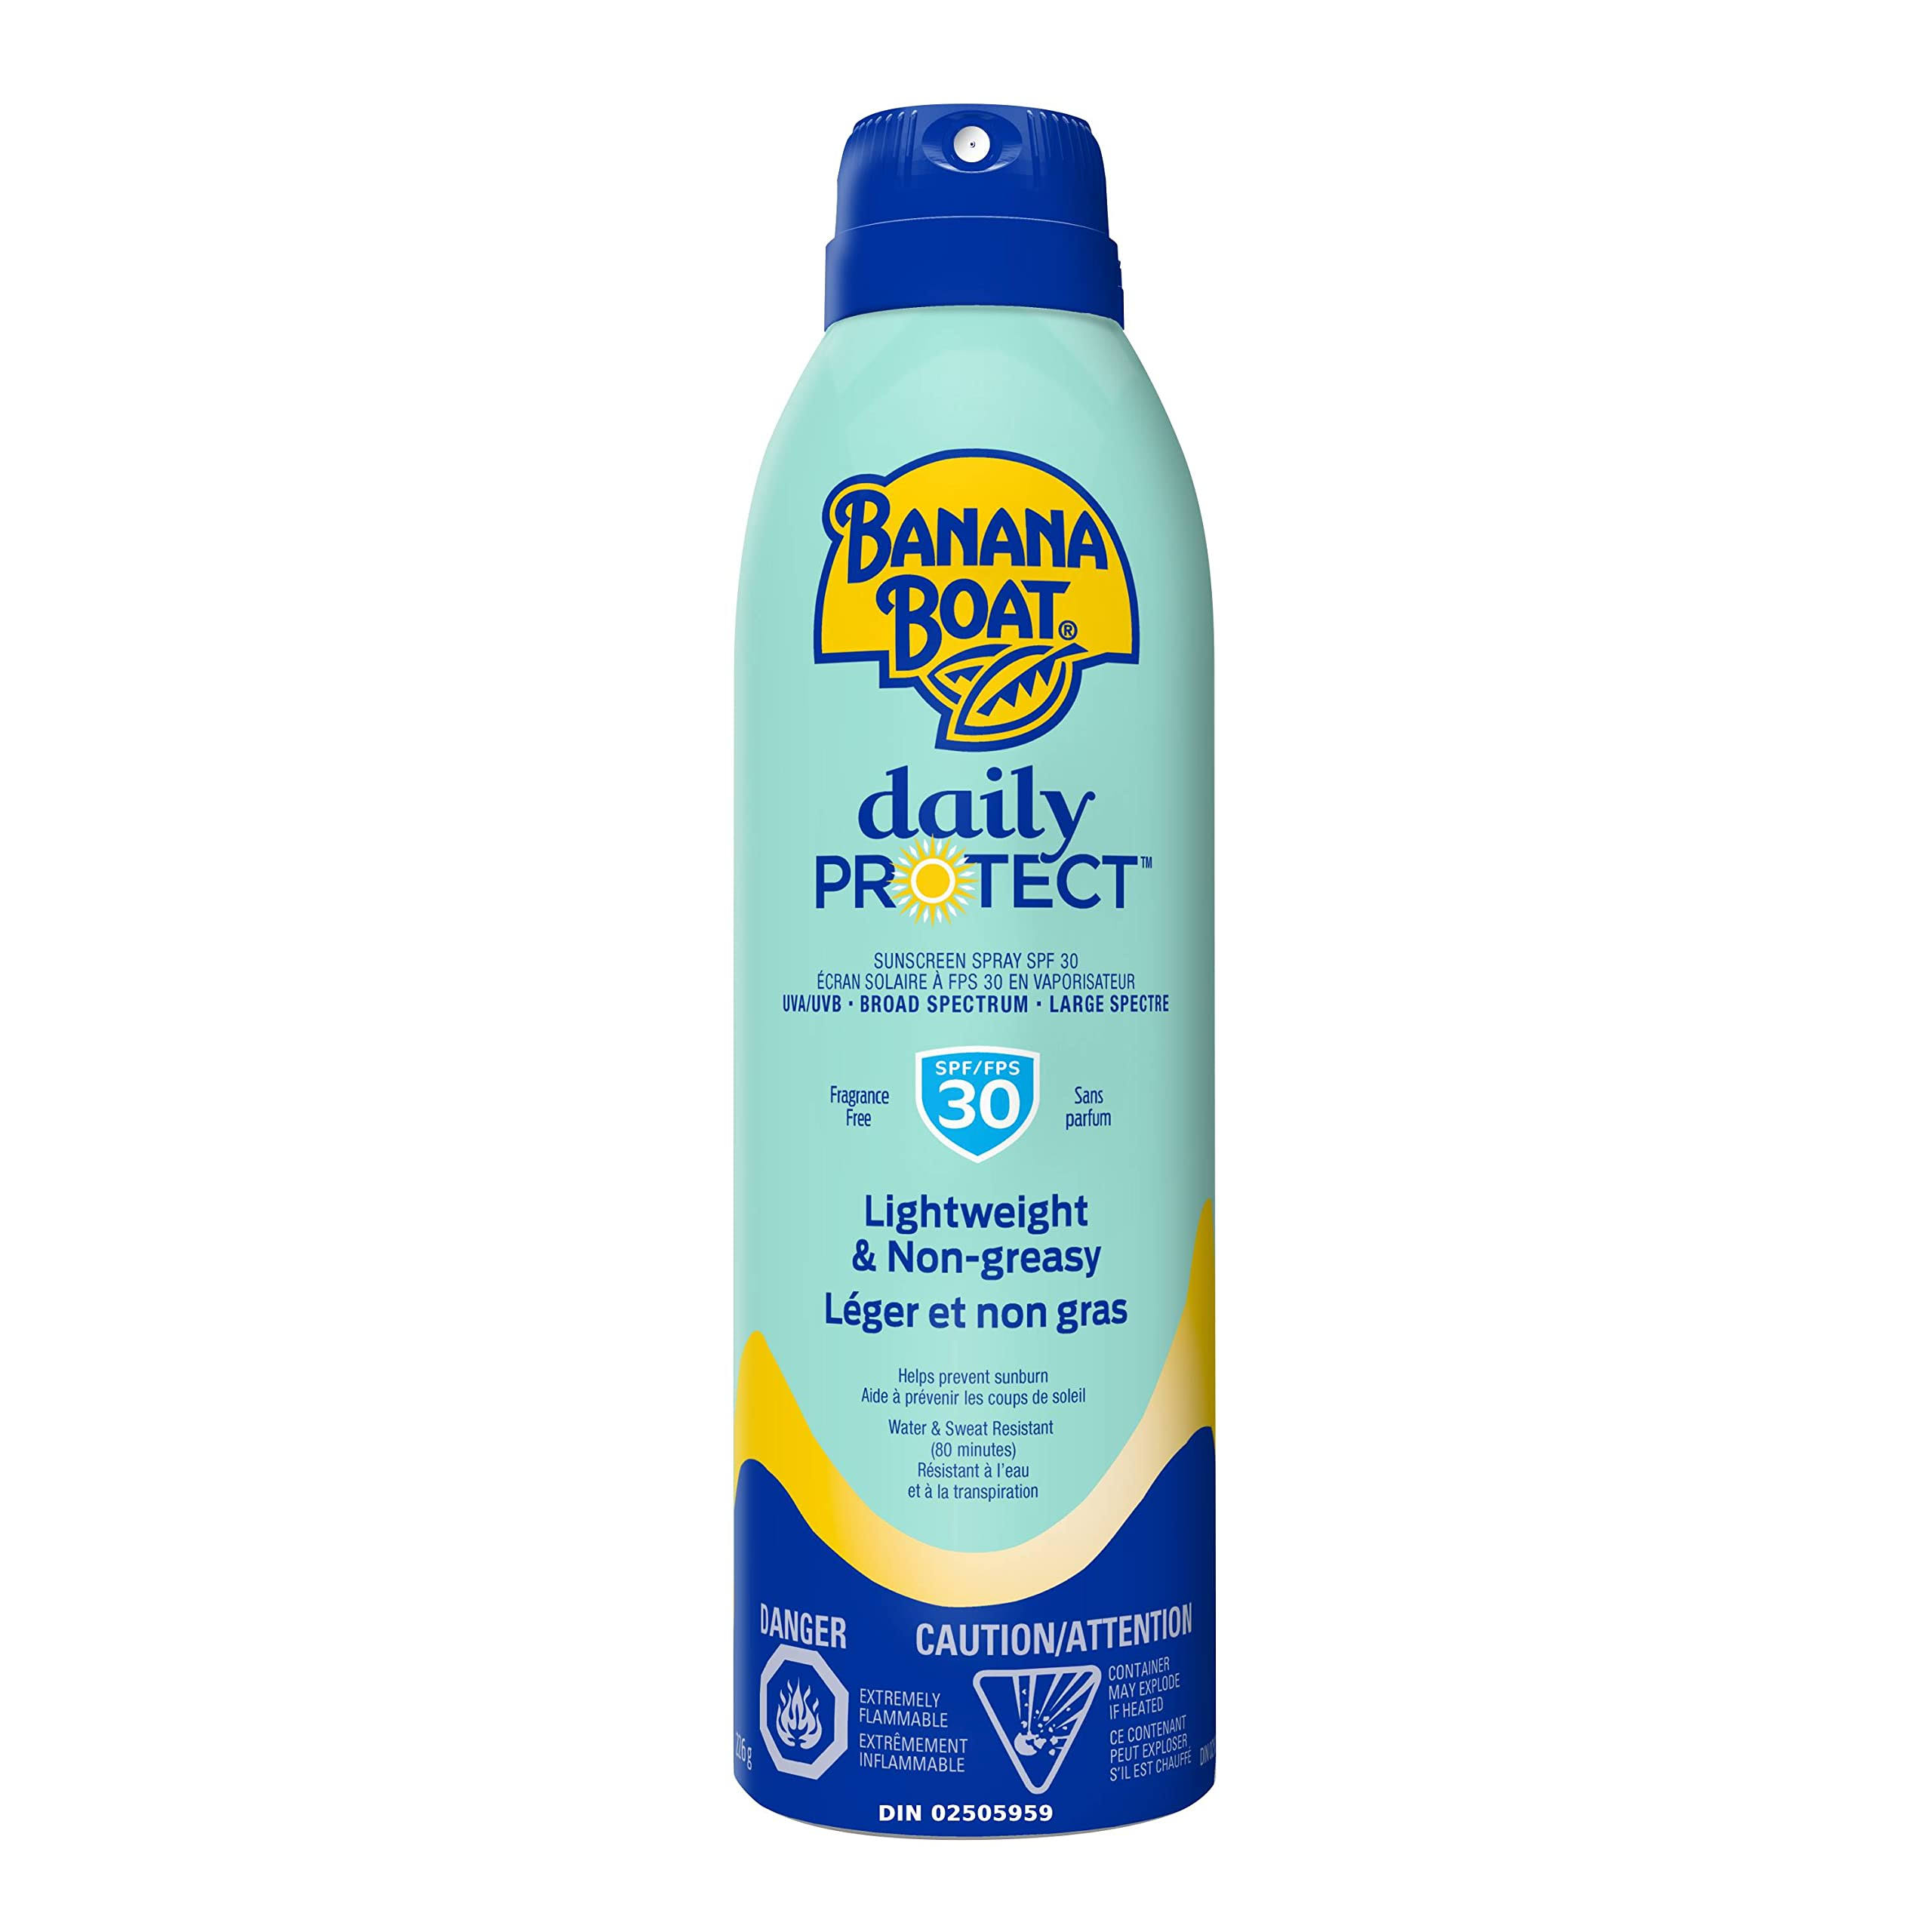 Banana Boat Daily Protect Sunscreen Spray SPF 30